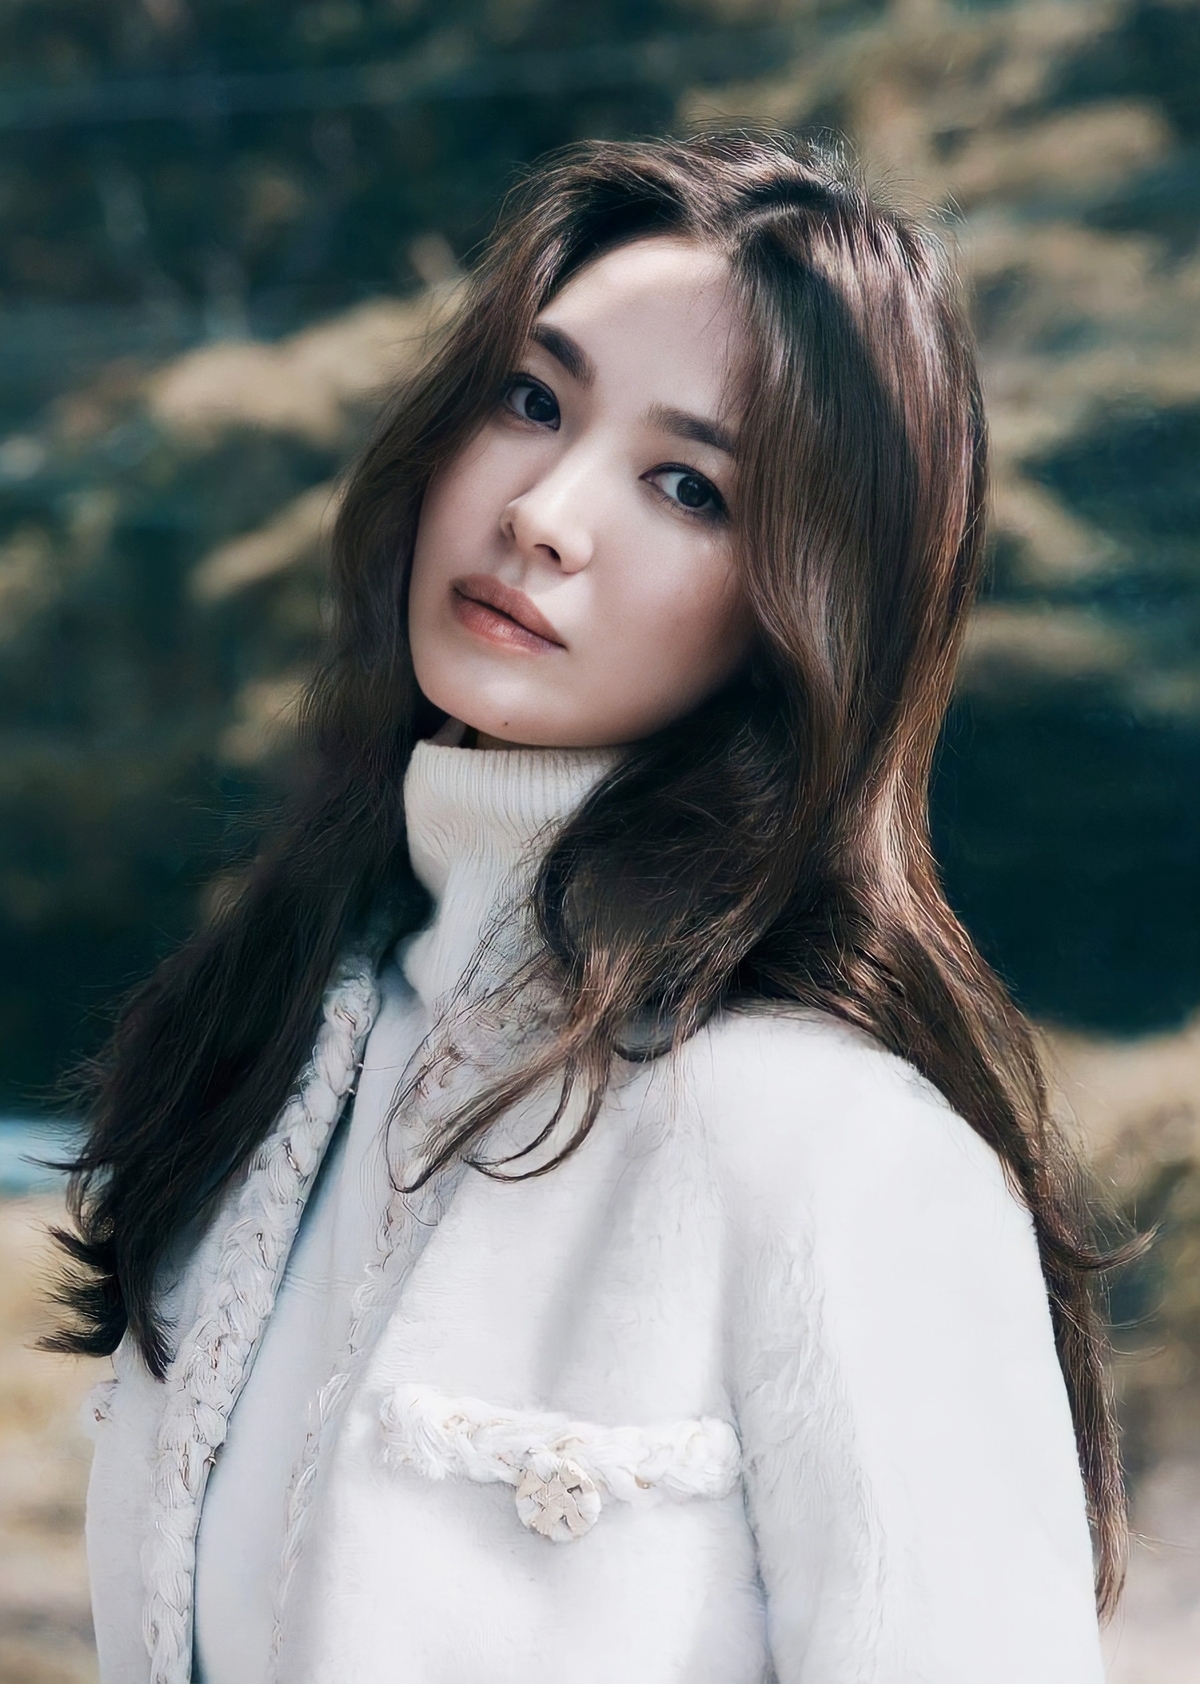 Song Hye Kyo là một gương mặt đình đám trong làng giải trí Hàn Quốc với nhan sắc đỉnh cao. Những hình ảnh của cô sẽ khiến bạn trầm trồ bởi vẻ đẹp tinh tế và thanh nhã. Hãy cùng ngắm nhìn và khám phá thêm về ngôi sao nổi tiếng này.